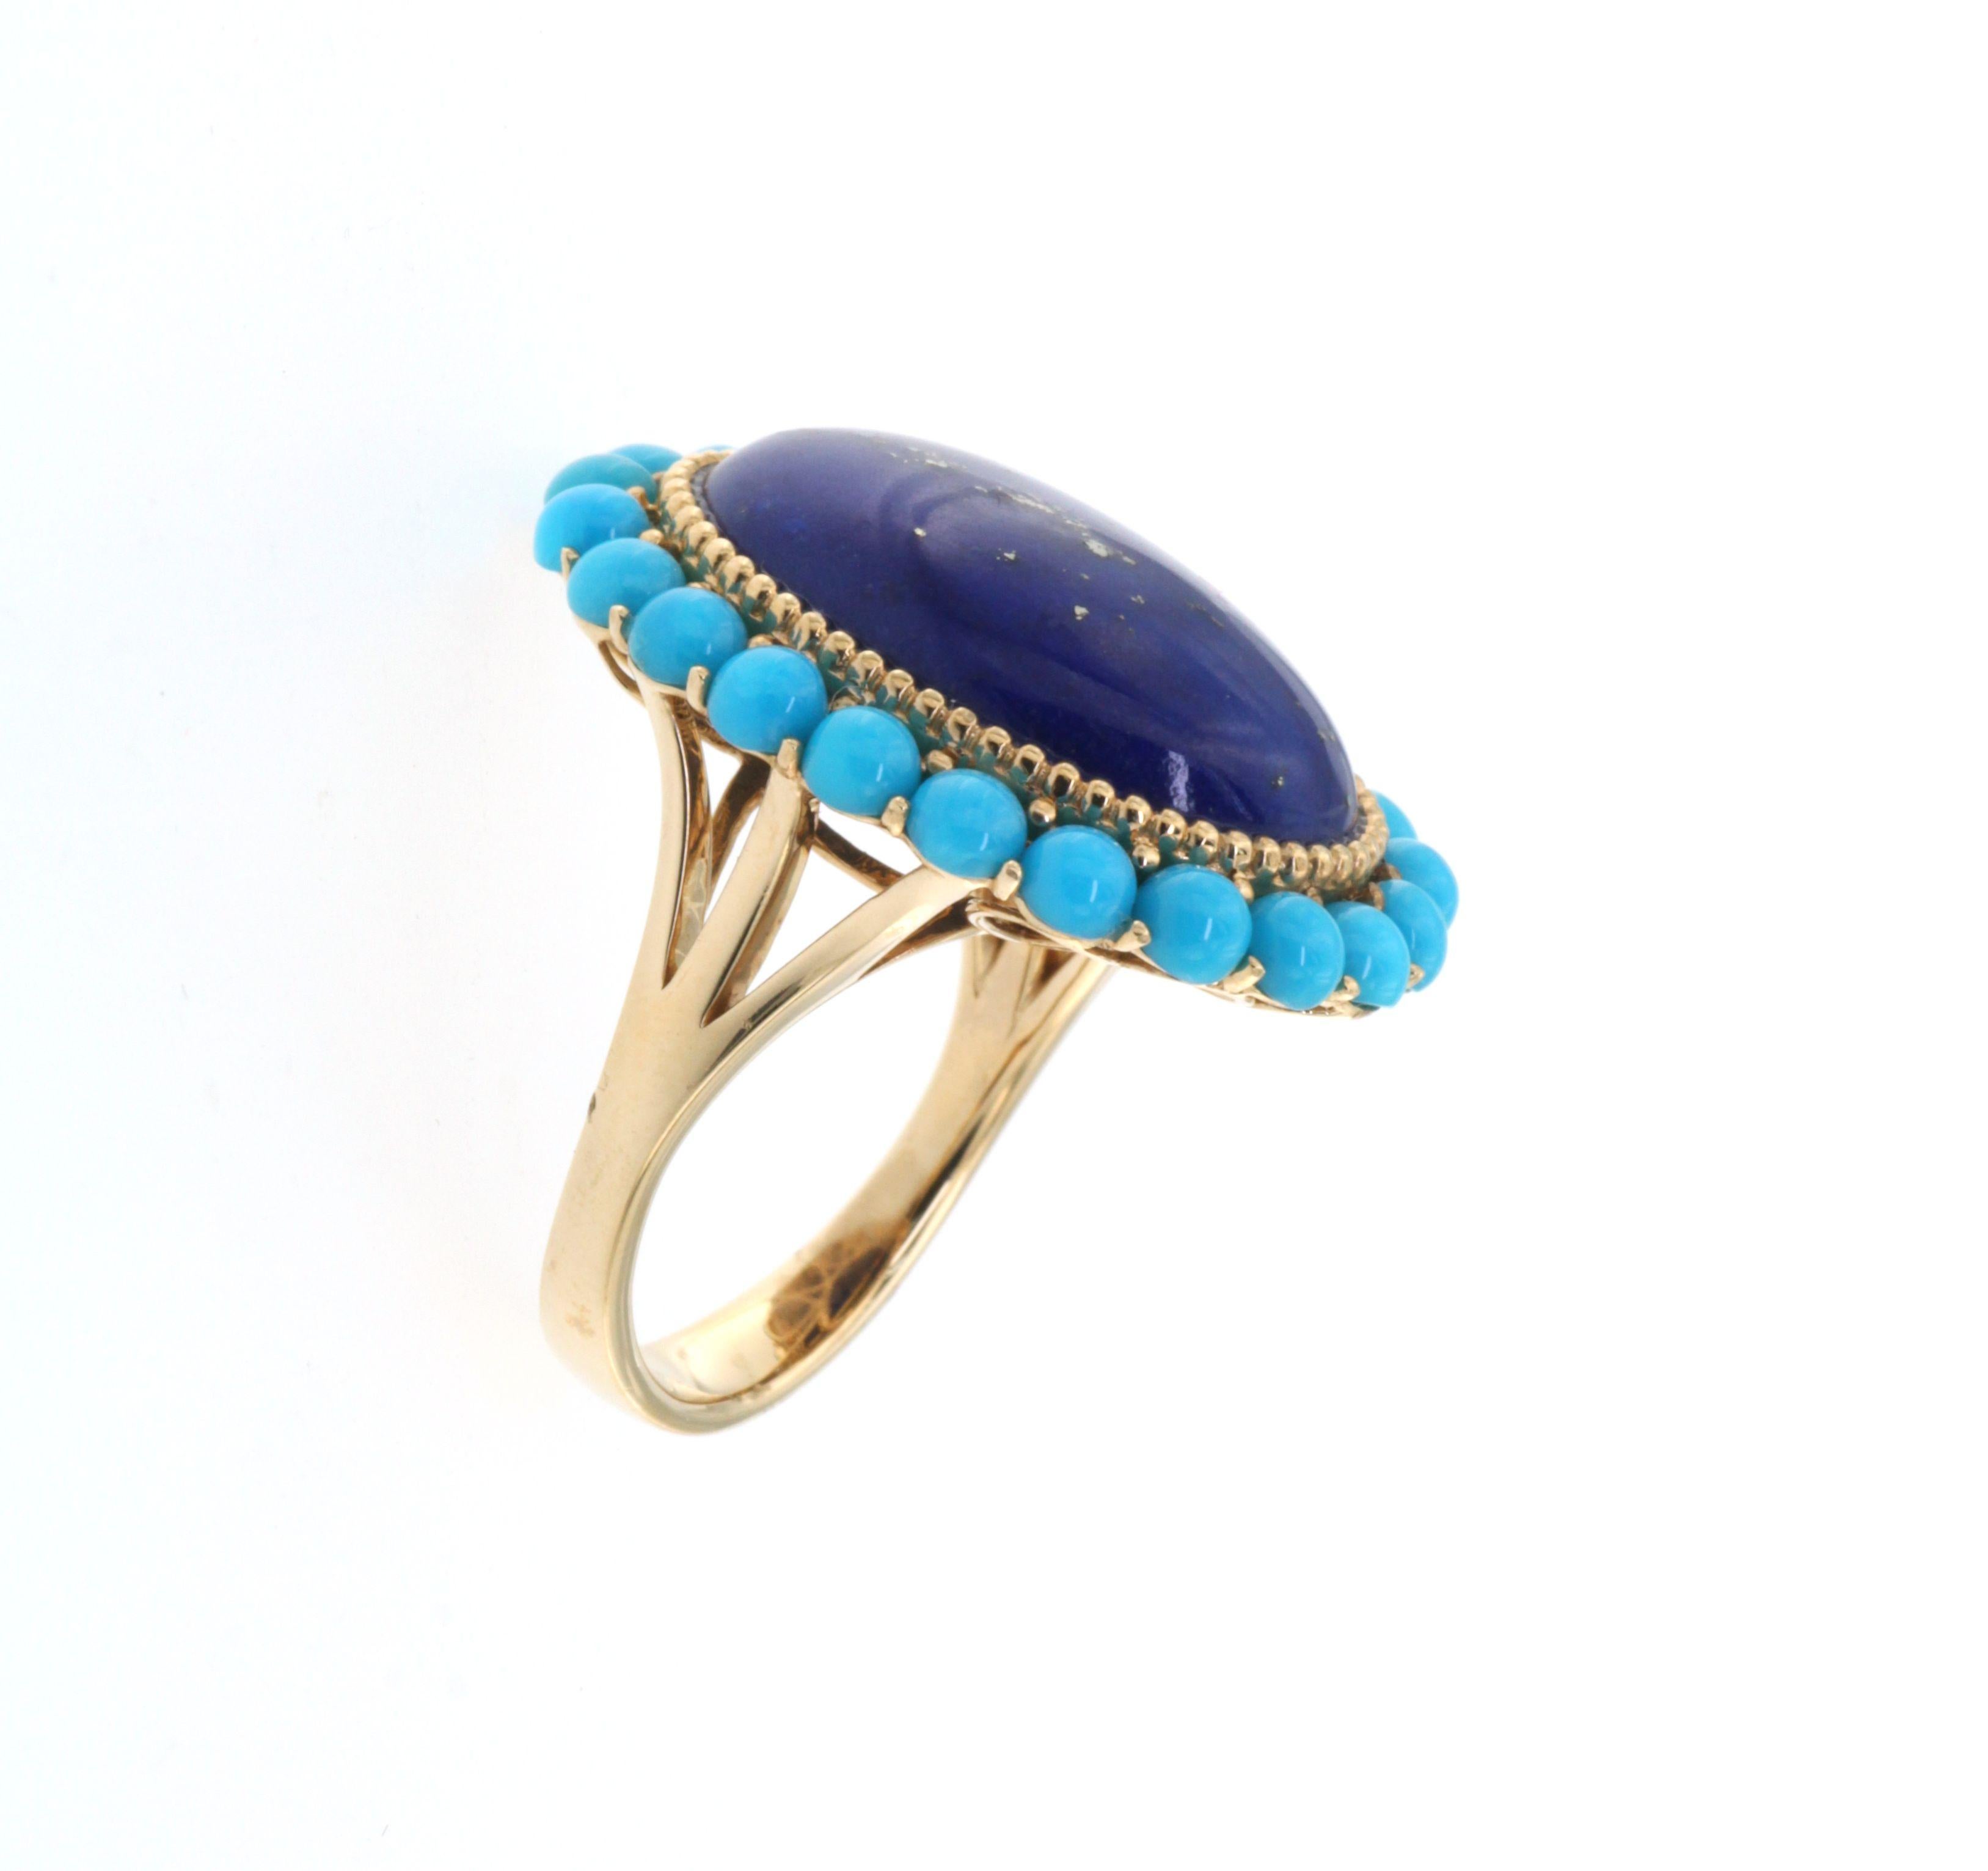 Retro Lapis Lazuli Turquoise Ring in 14 Karat Yellow Gold